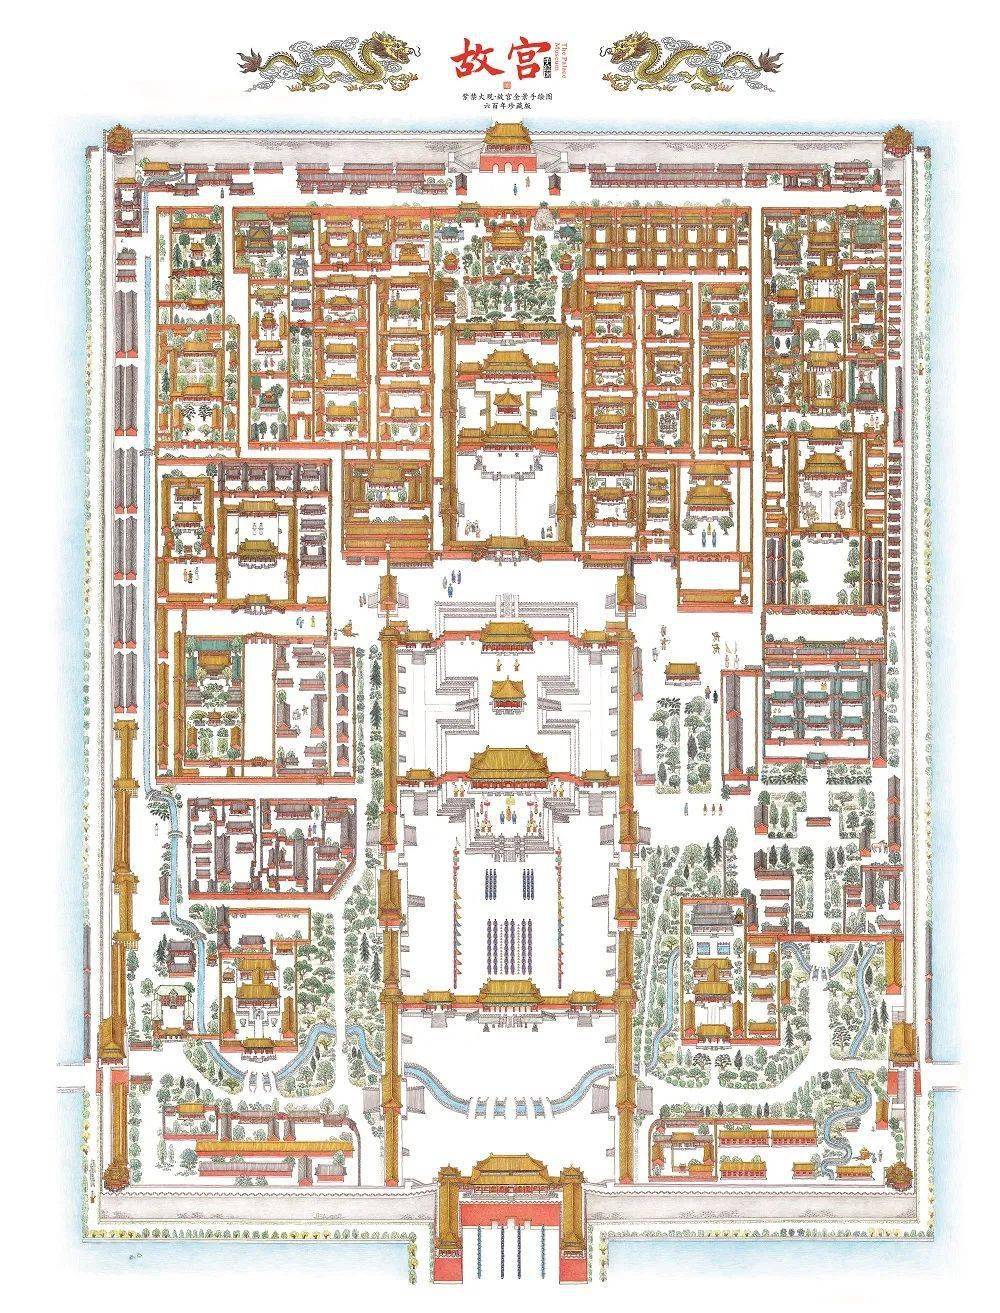 故宫地图全景地图高清图片